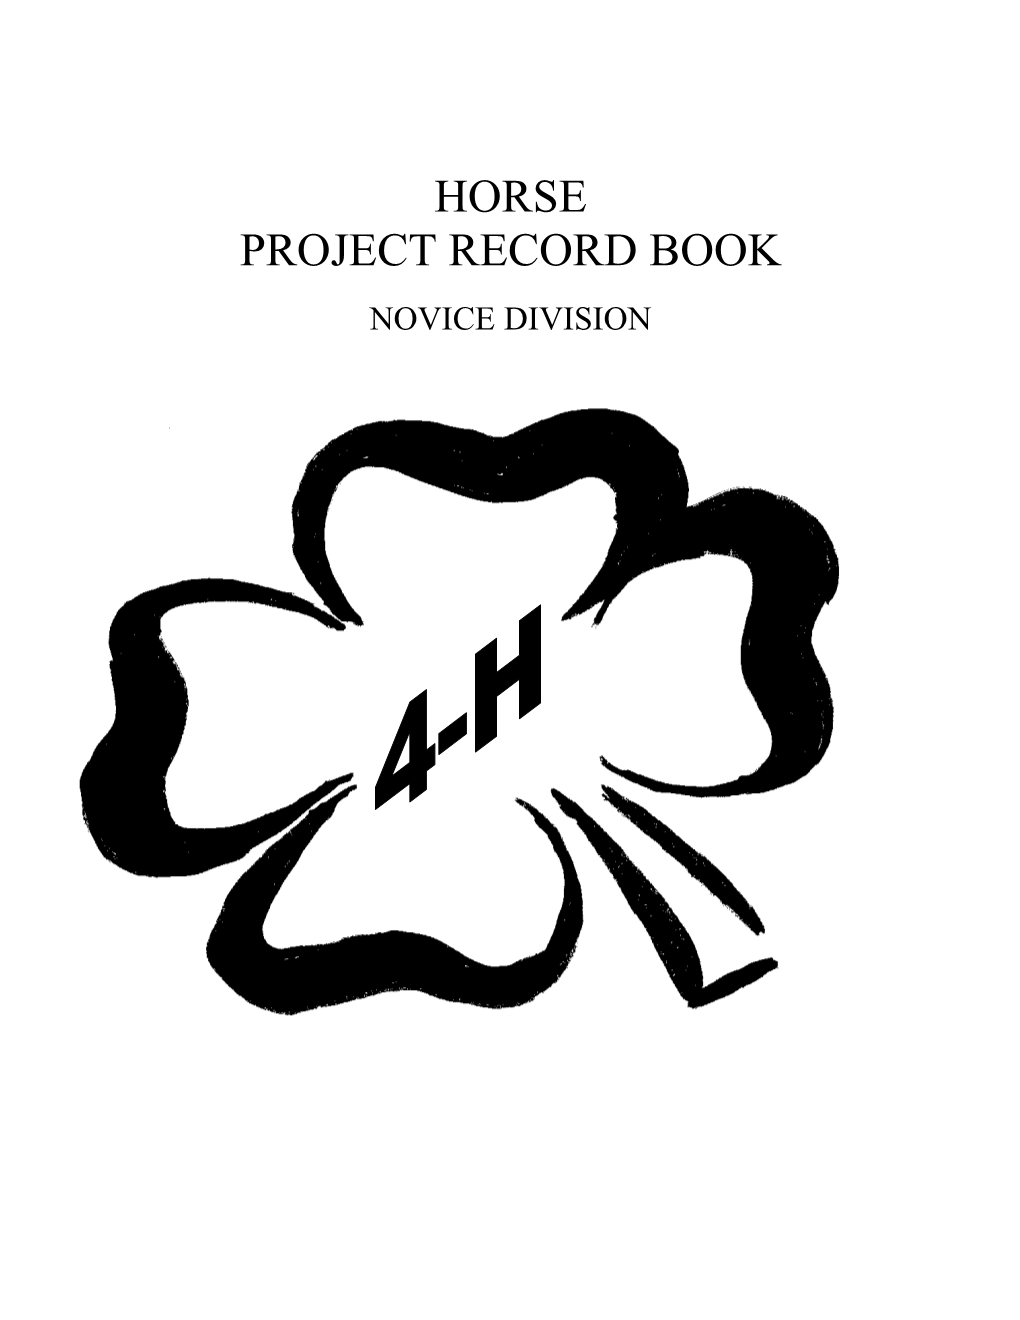 Description of Your Horse/Pony